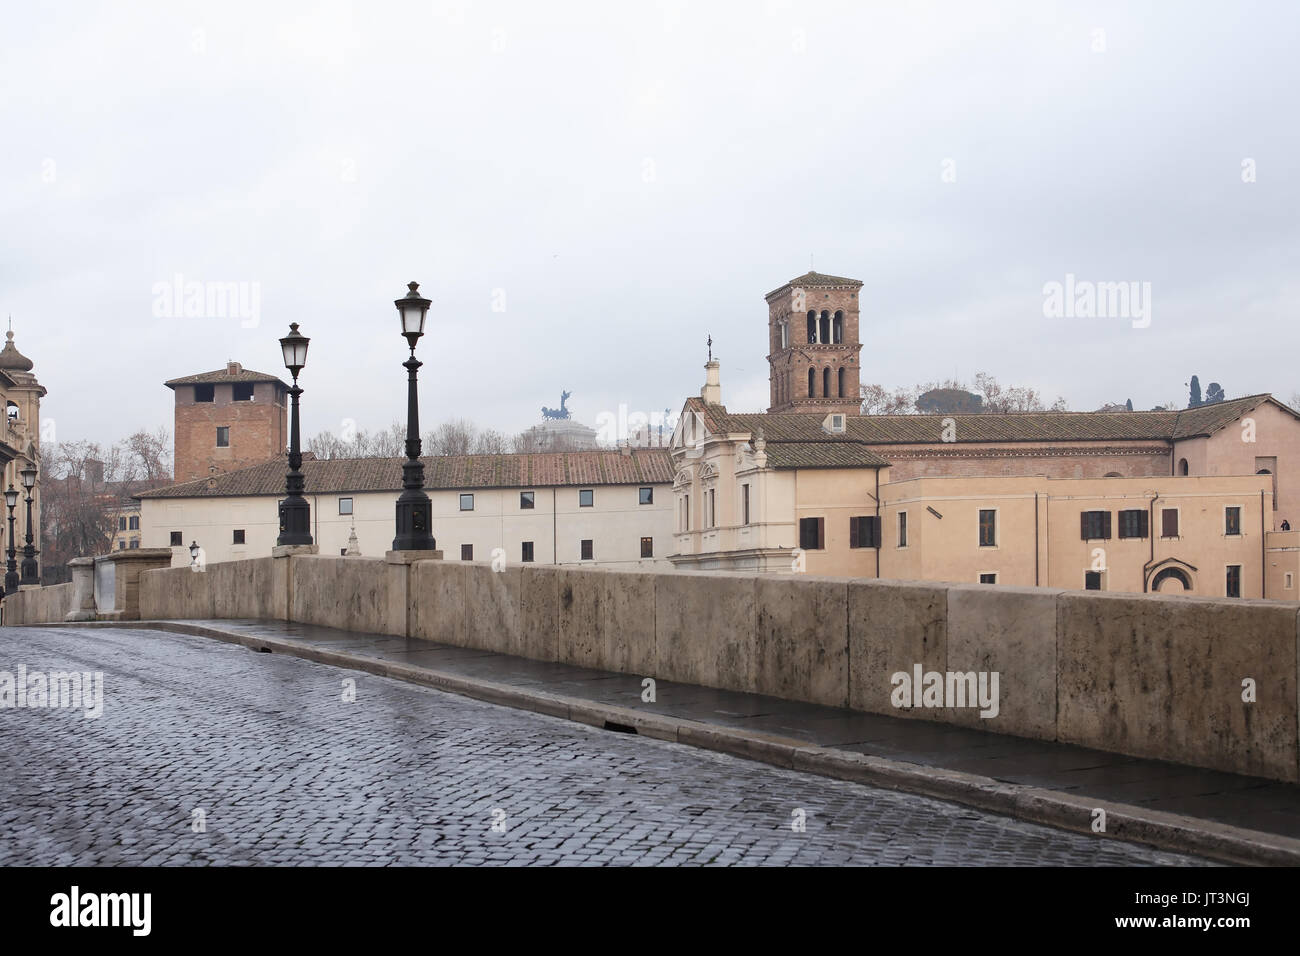 Tranguil scène urbaine. Vieux pont de pierre avec des candélabres, Rome, Italie Banque D'Images